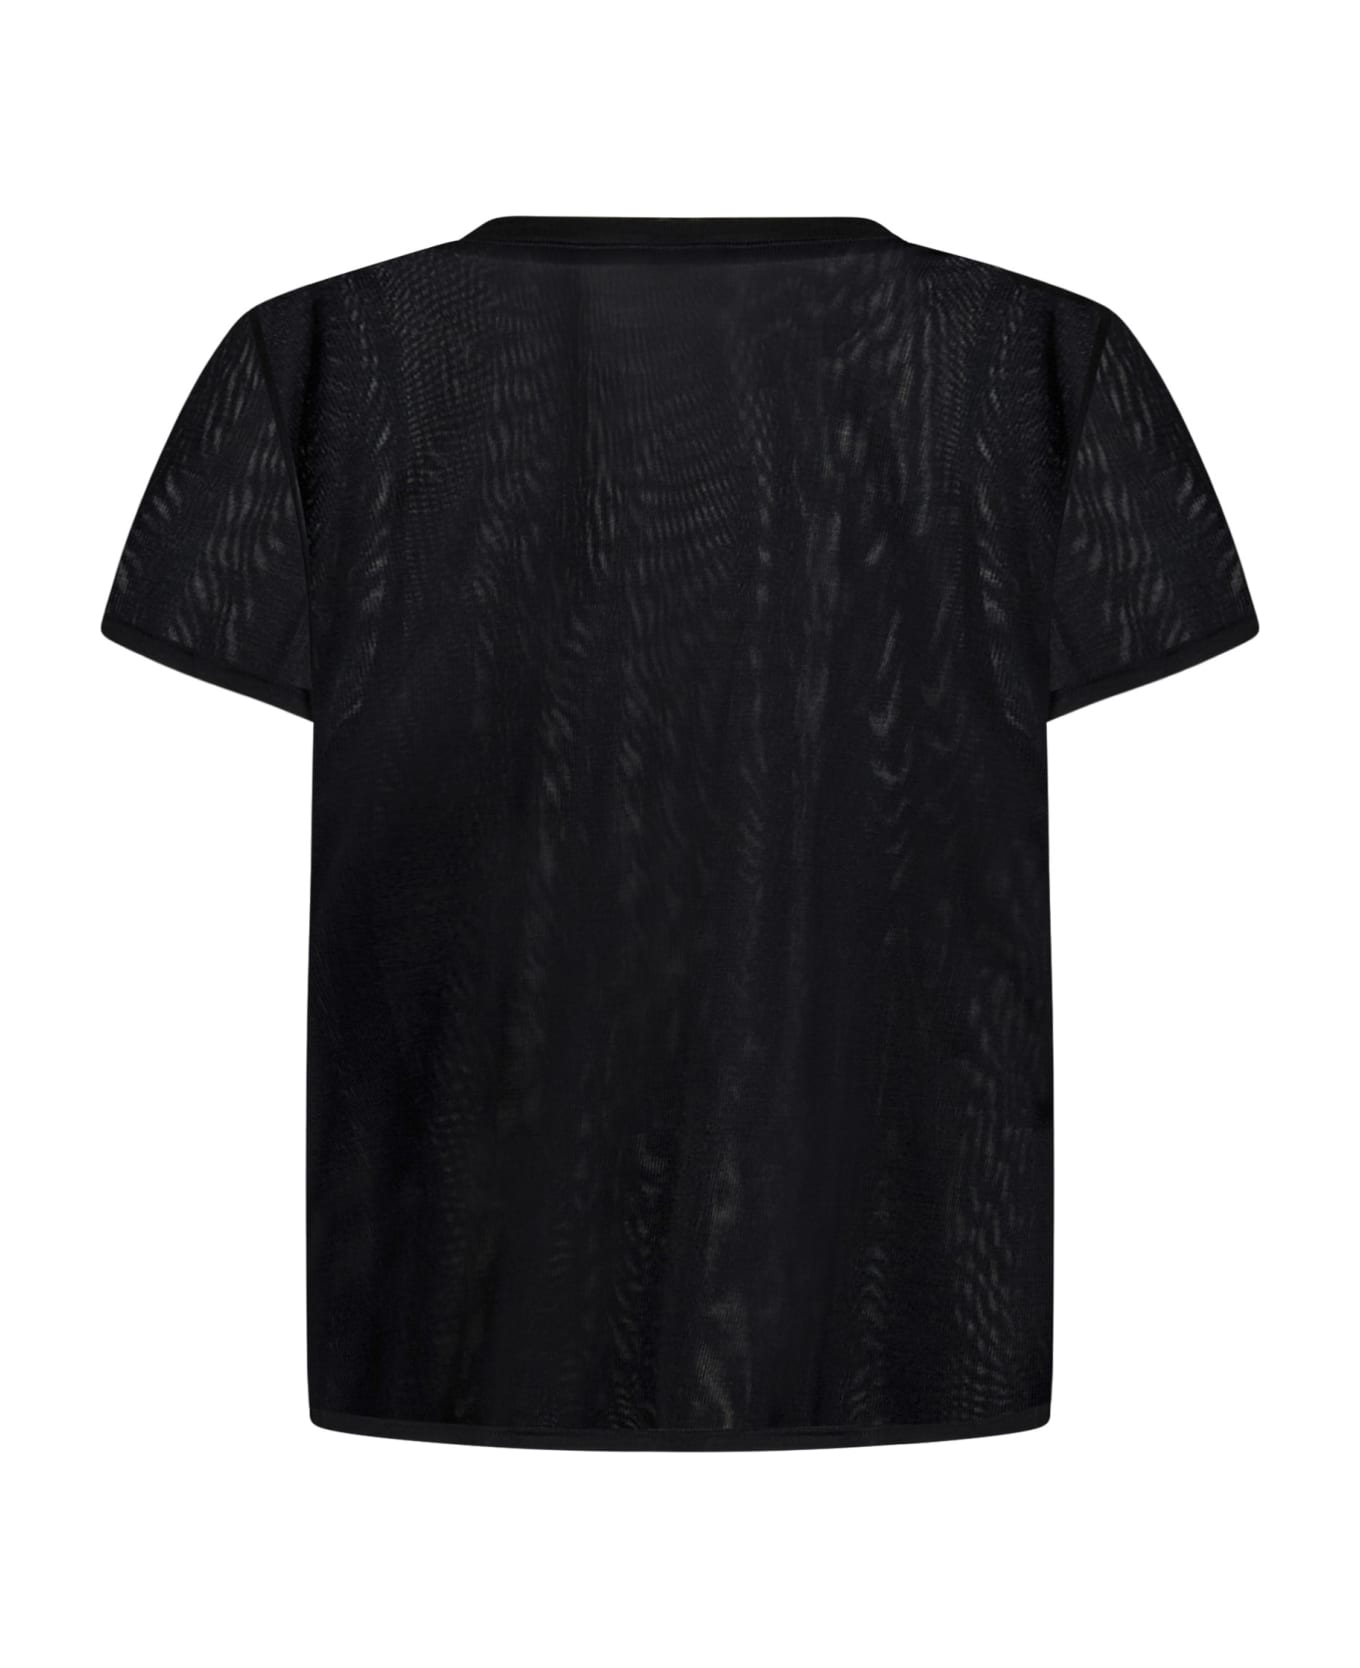 Tom Ford Silk T-shirt - Black Tシャツ